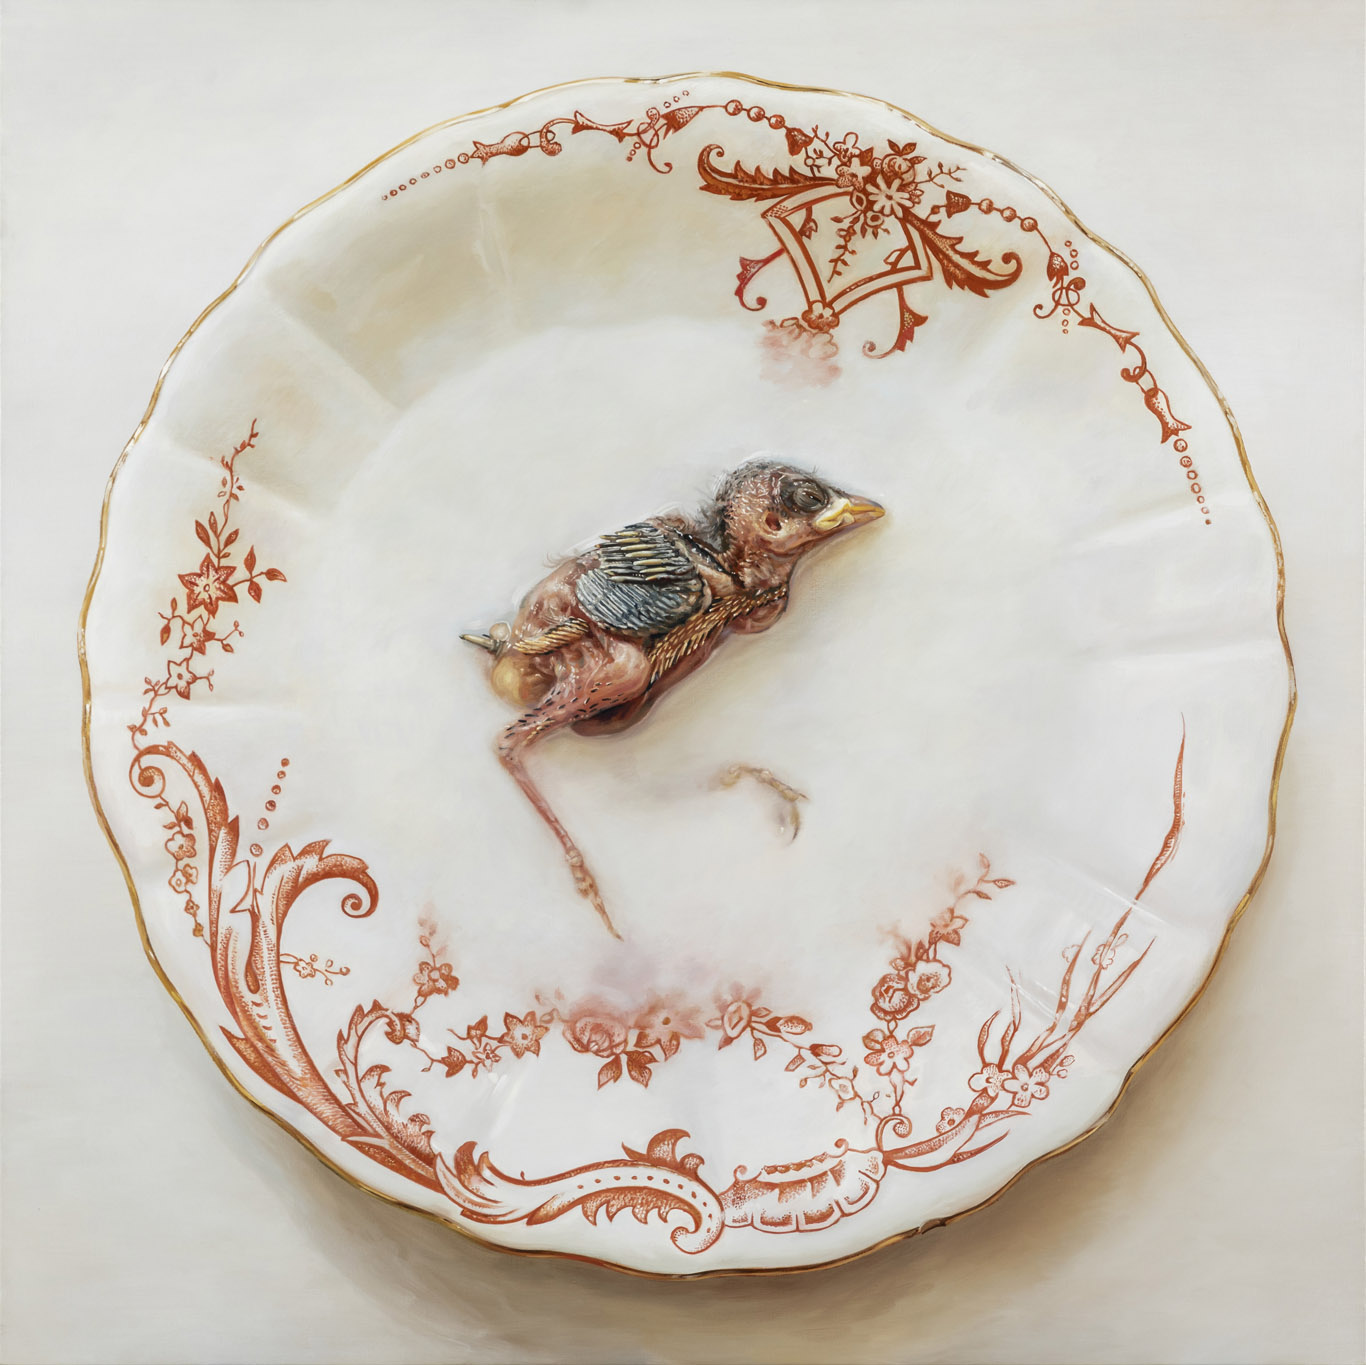 Cindy Wright, Cat's Milk, 2017, peinture sur lin en trompe l'œil représentant un assiette blanche décorée de motifs décoratifs sur laquelle est posé le corps d'un oisillon mort, exposition En Regard, Delta Namur, 2023